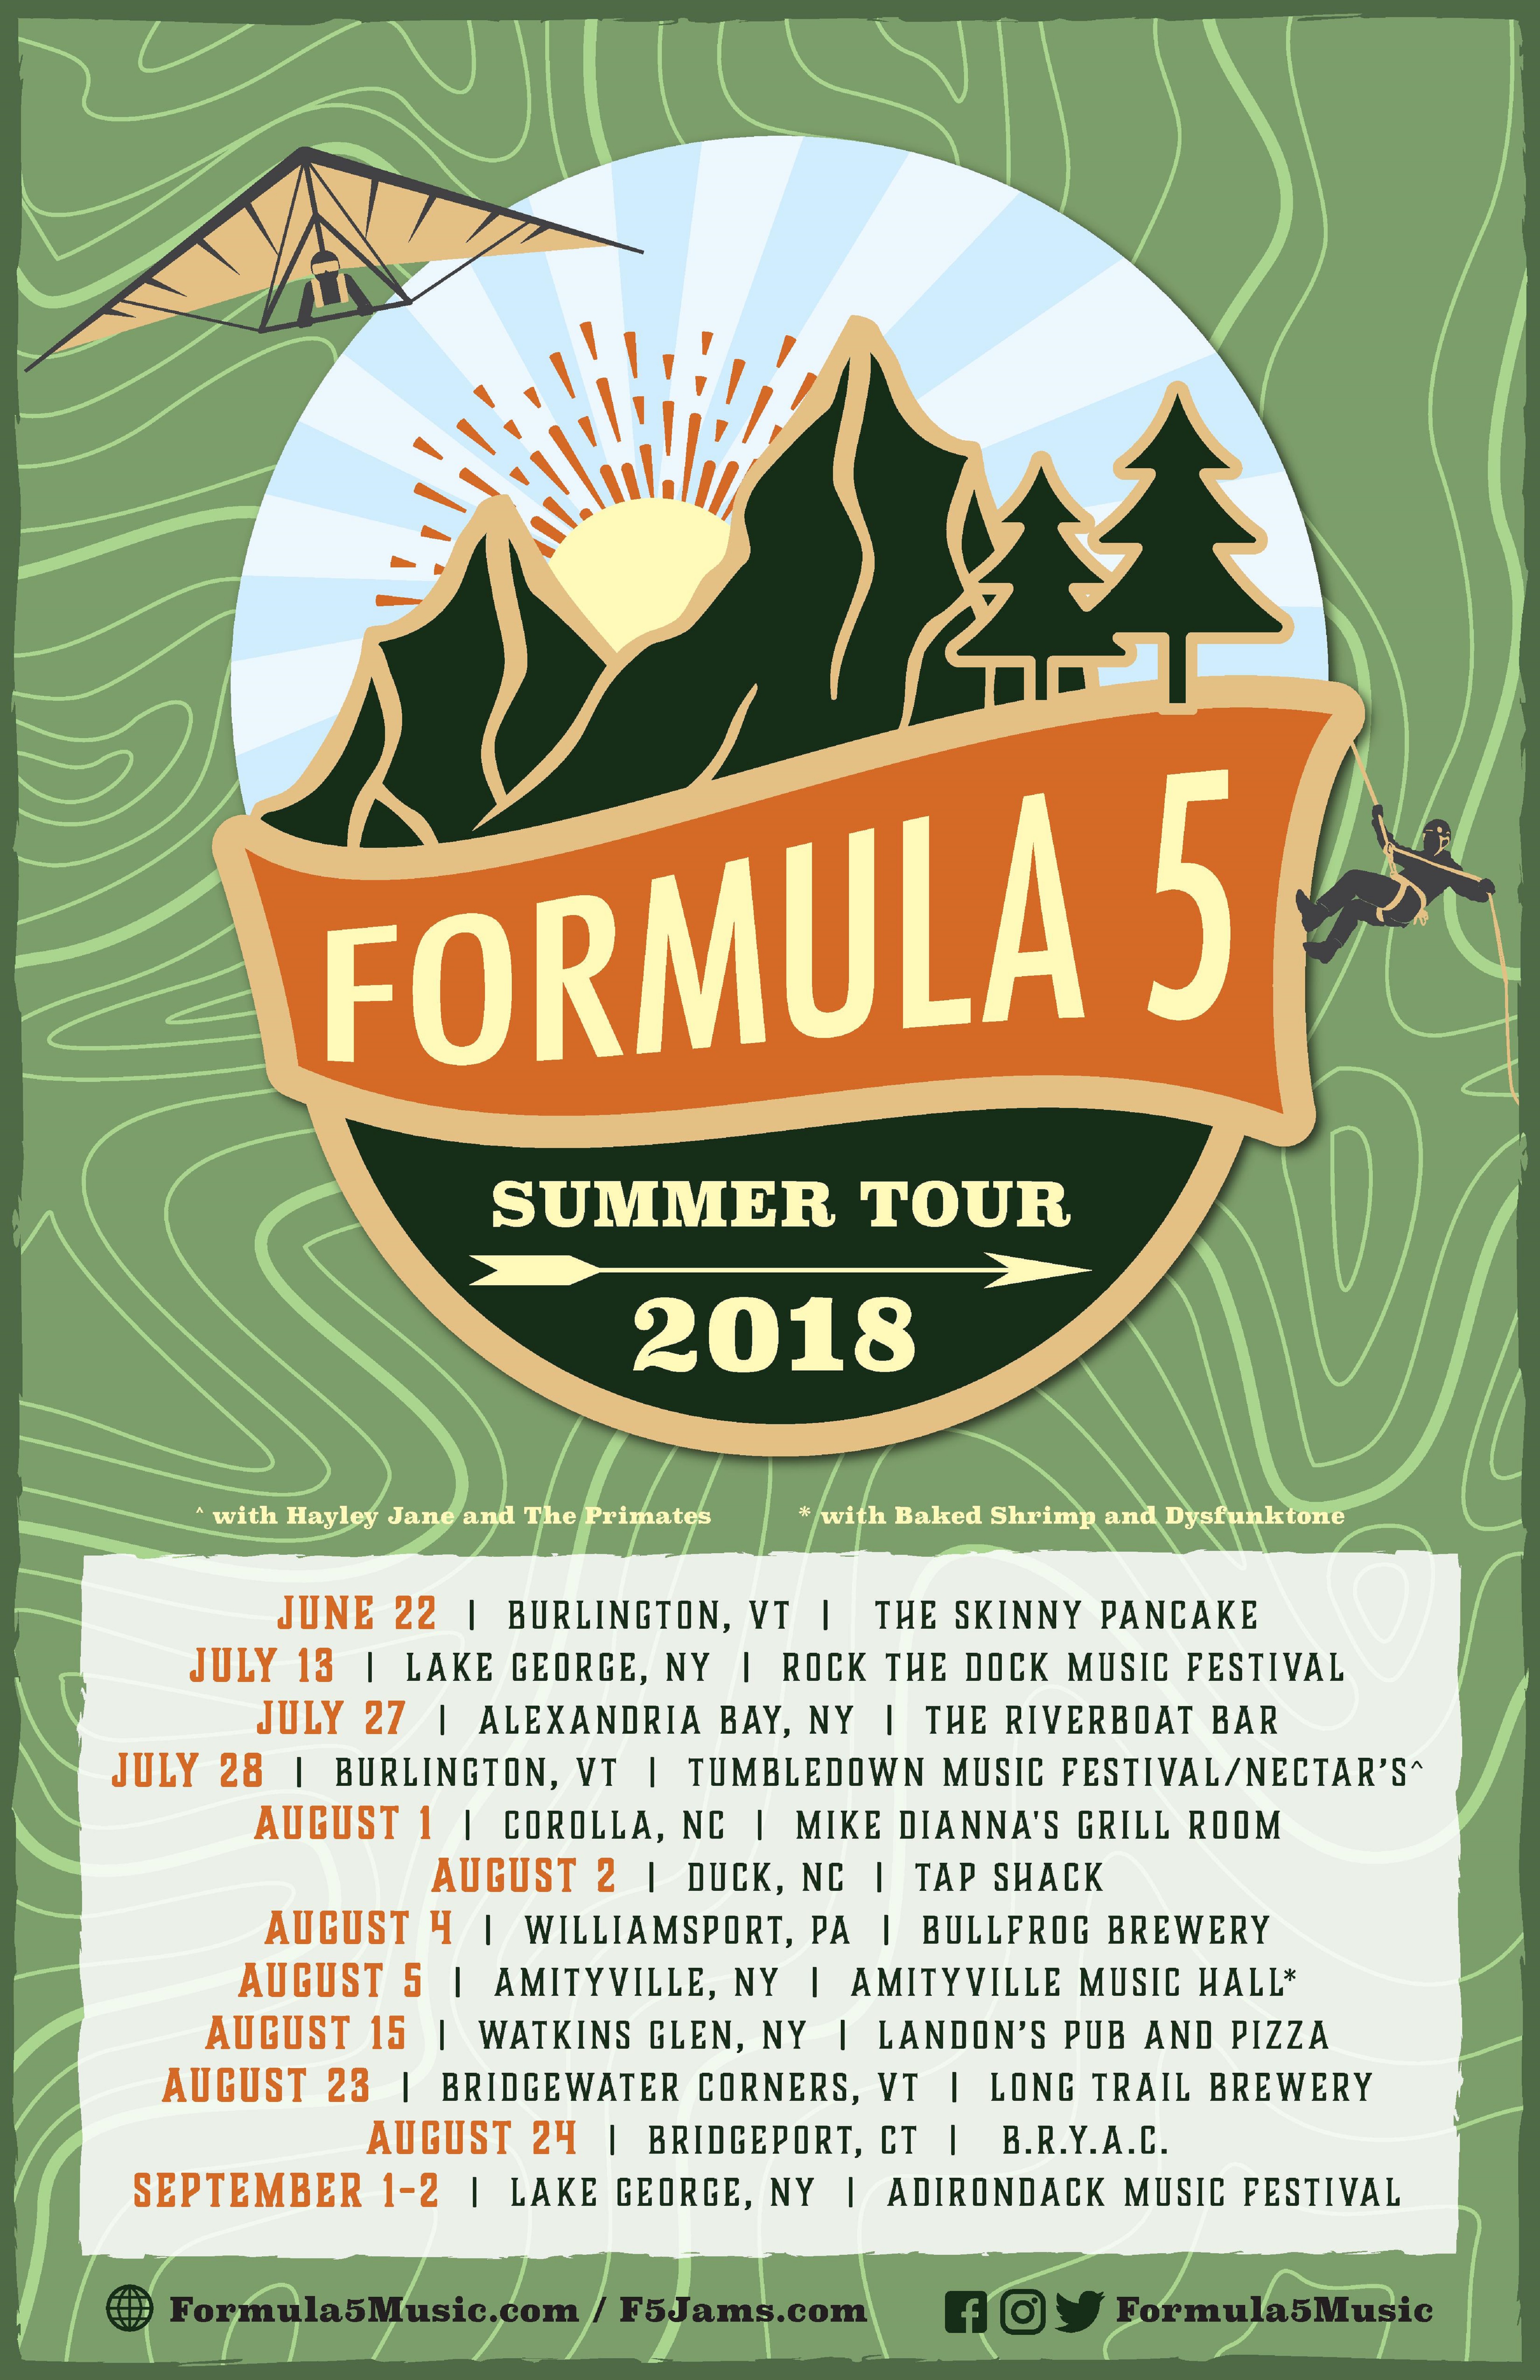 Formula 5 Announces 2018 Summer Tour